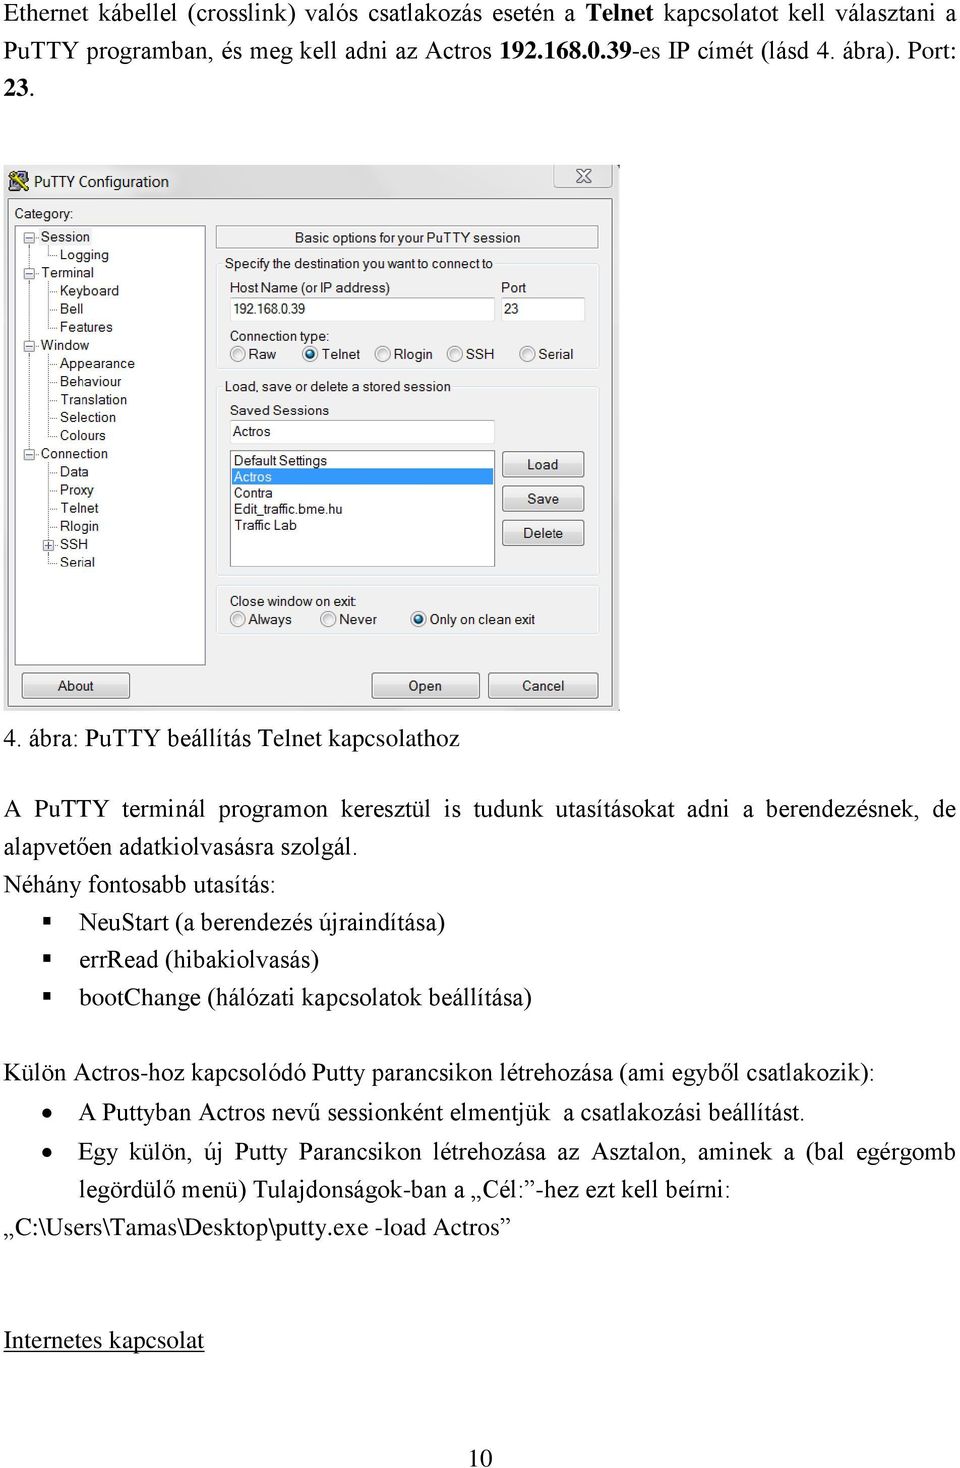 Néhány fontosabb utasítás: NeuStart (a berendezés újraindítása) errread (hibakiolvasás) bootchange (hálózati kapcsolatok beállítása) Külön Actros-hoz kapcsolódó Putty parancsikon létrehozása (ami